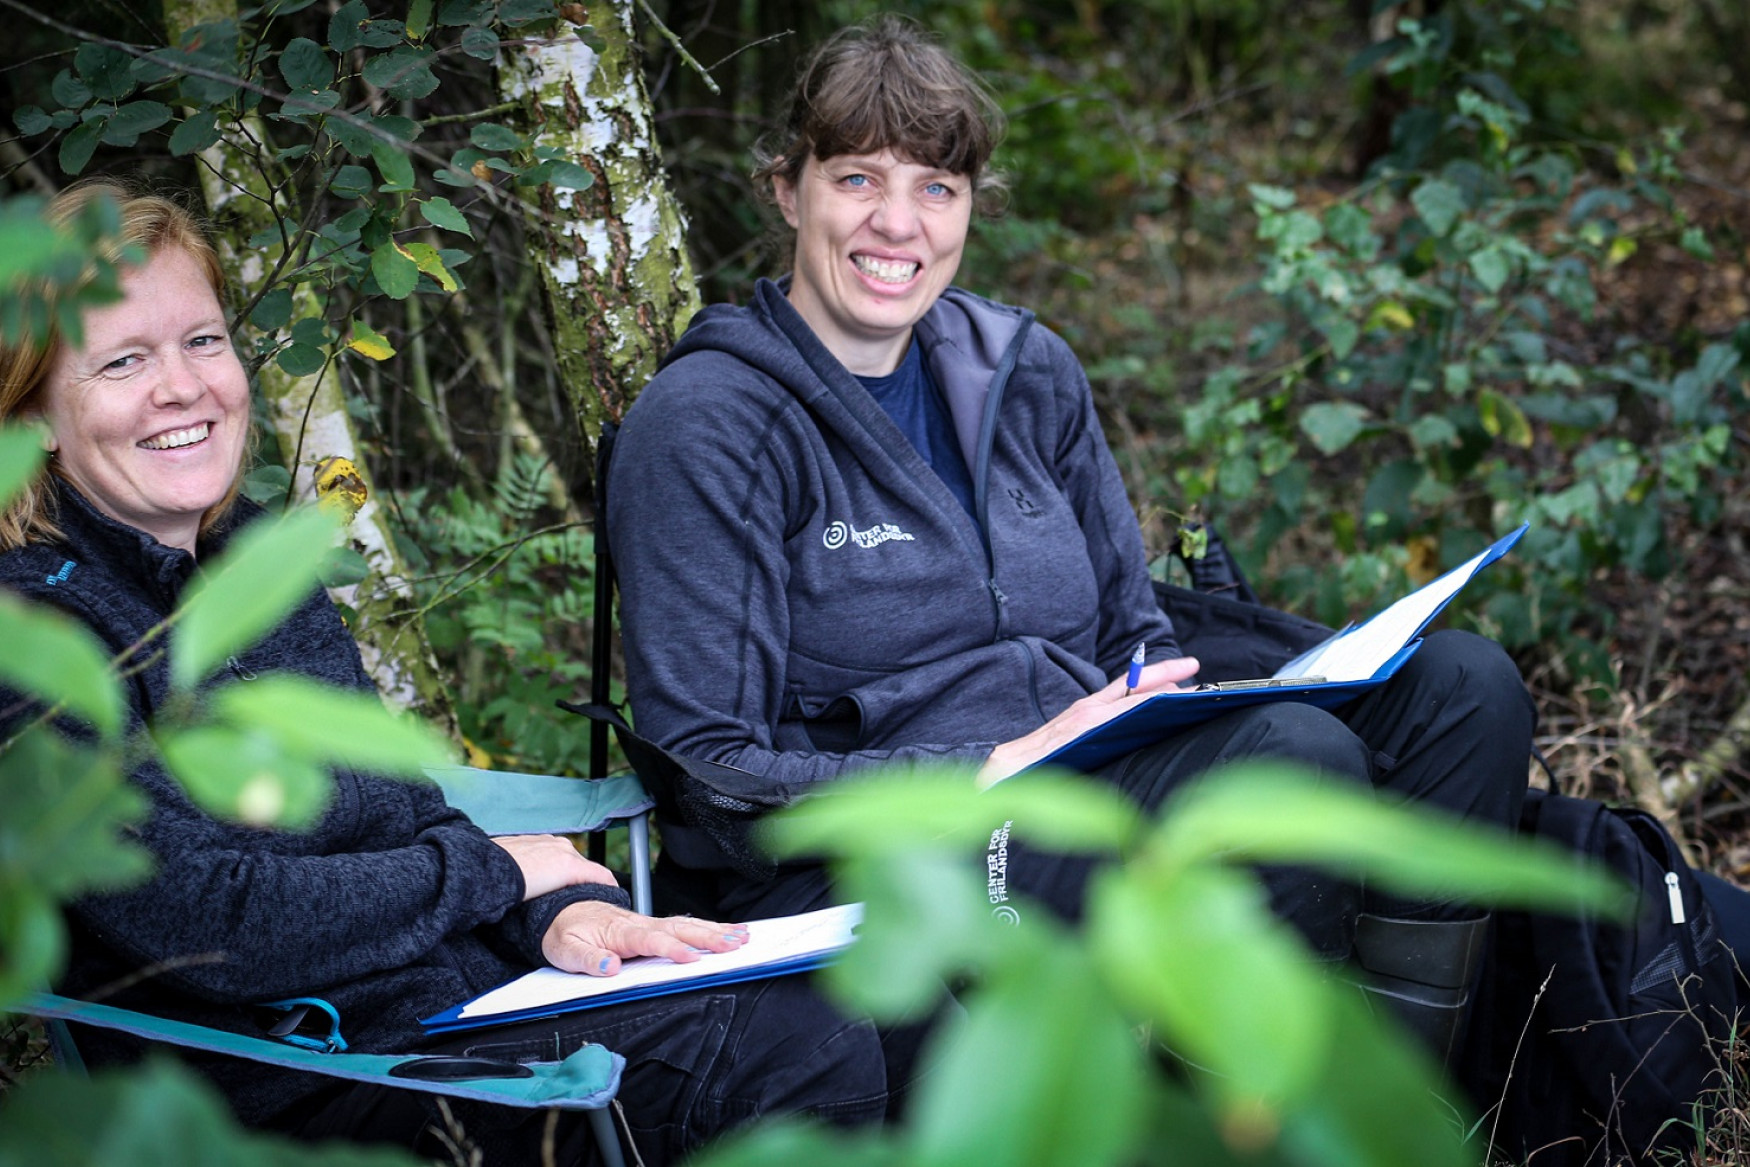 Rikke Thomsen og Kirstine Flintholm Jørgensen sidder i skoven på stole og smiler til kameraet